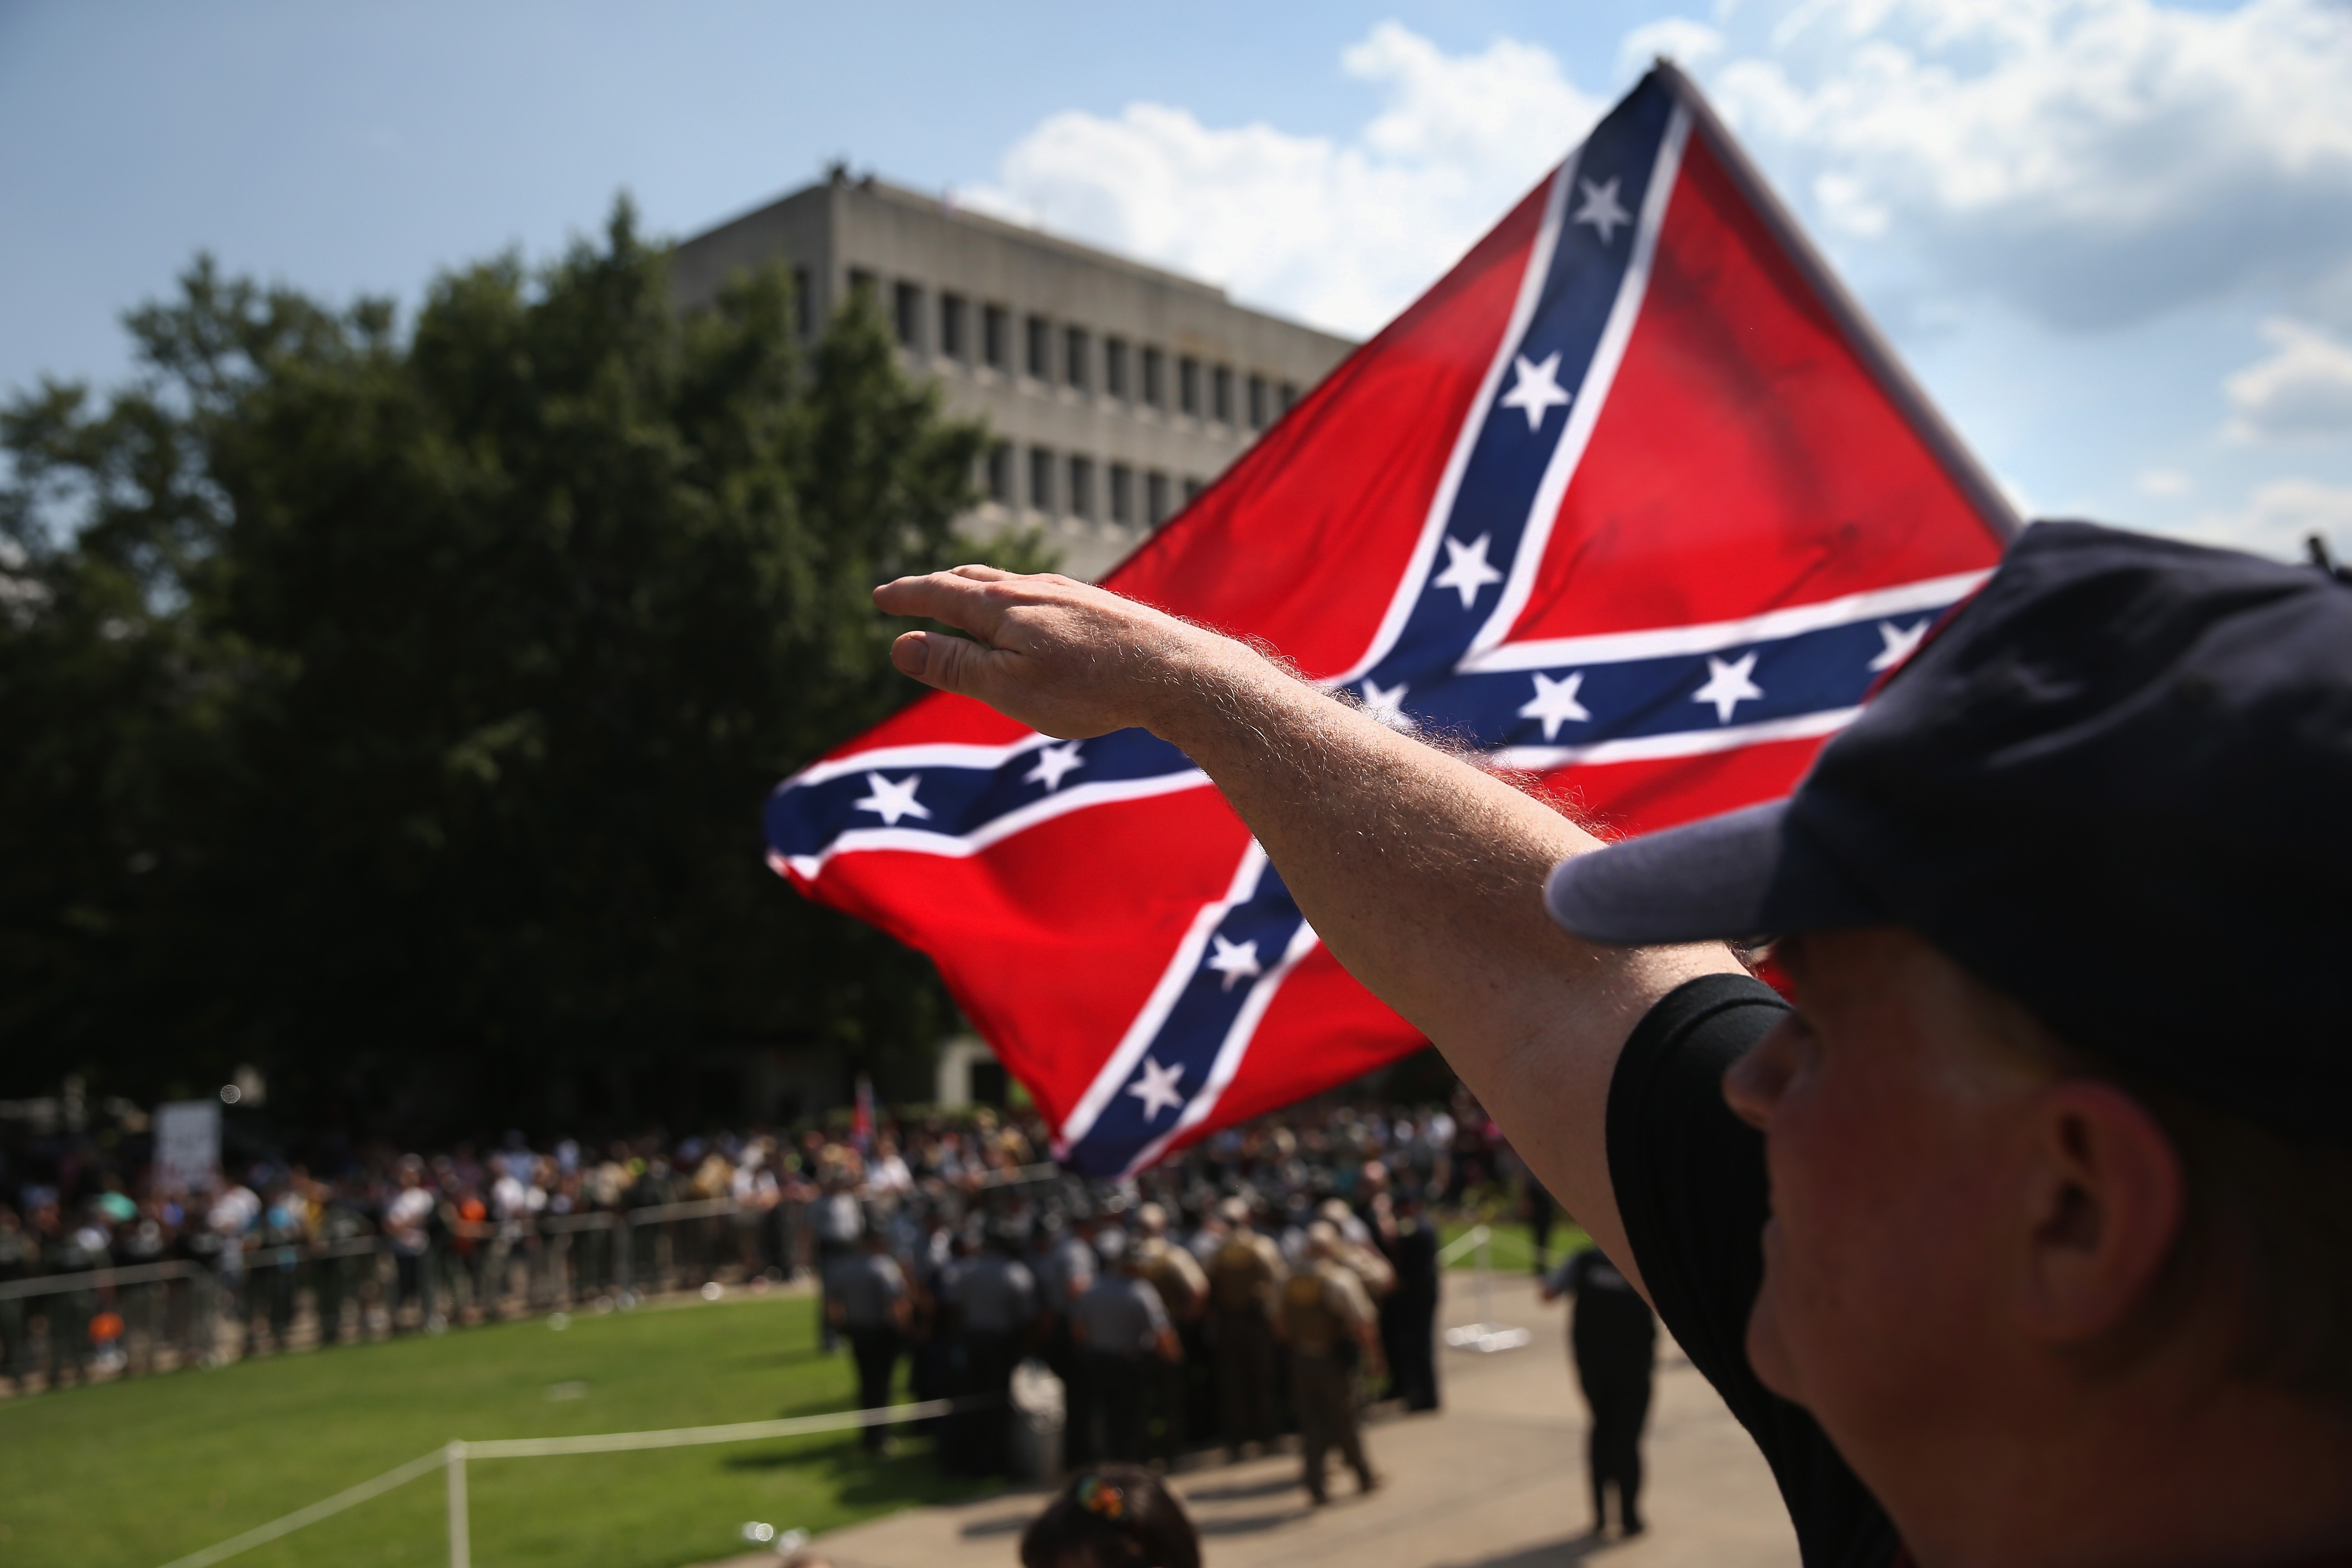 Membro da Ku Klux Klan faz sudação nazista  (Foto: John Moore/Getty Images)